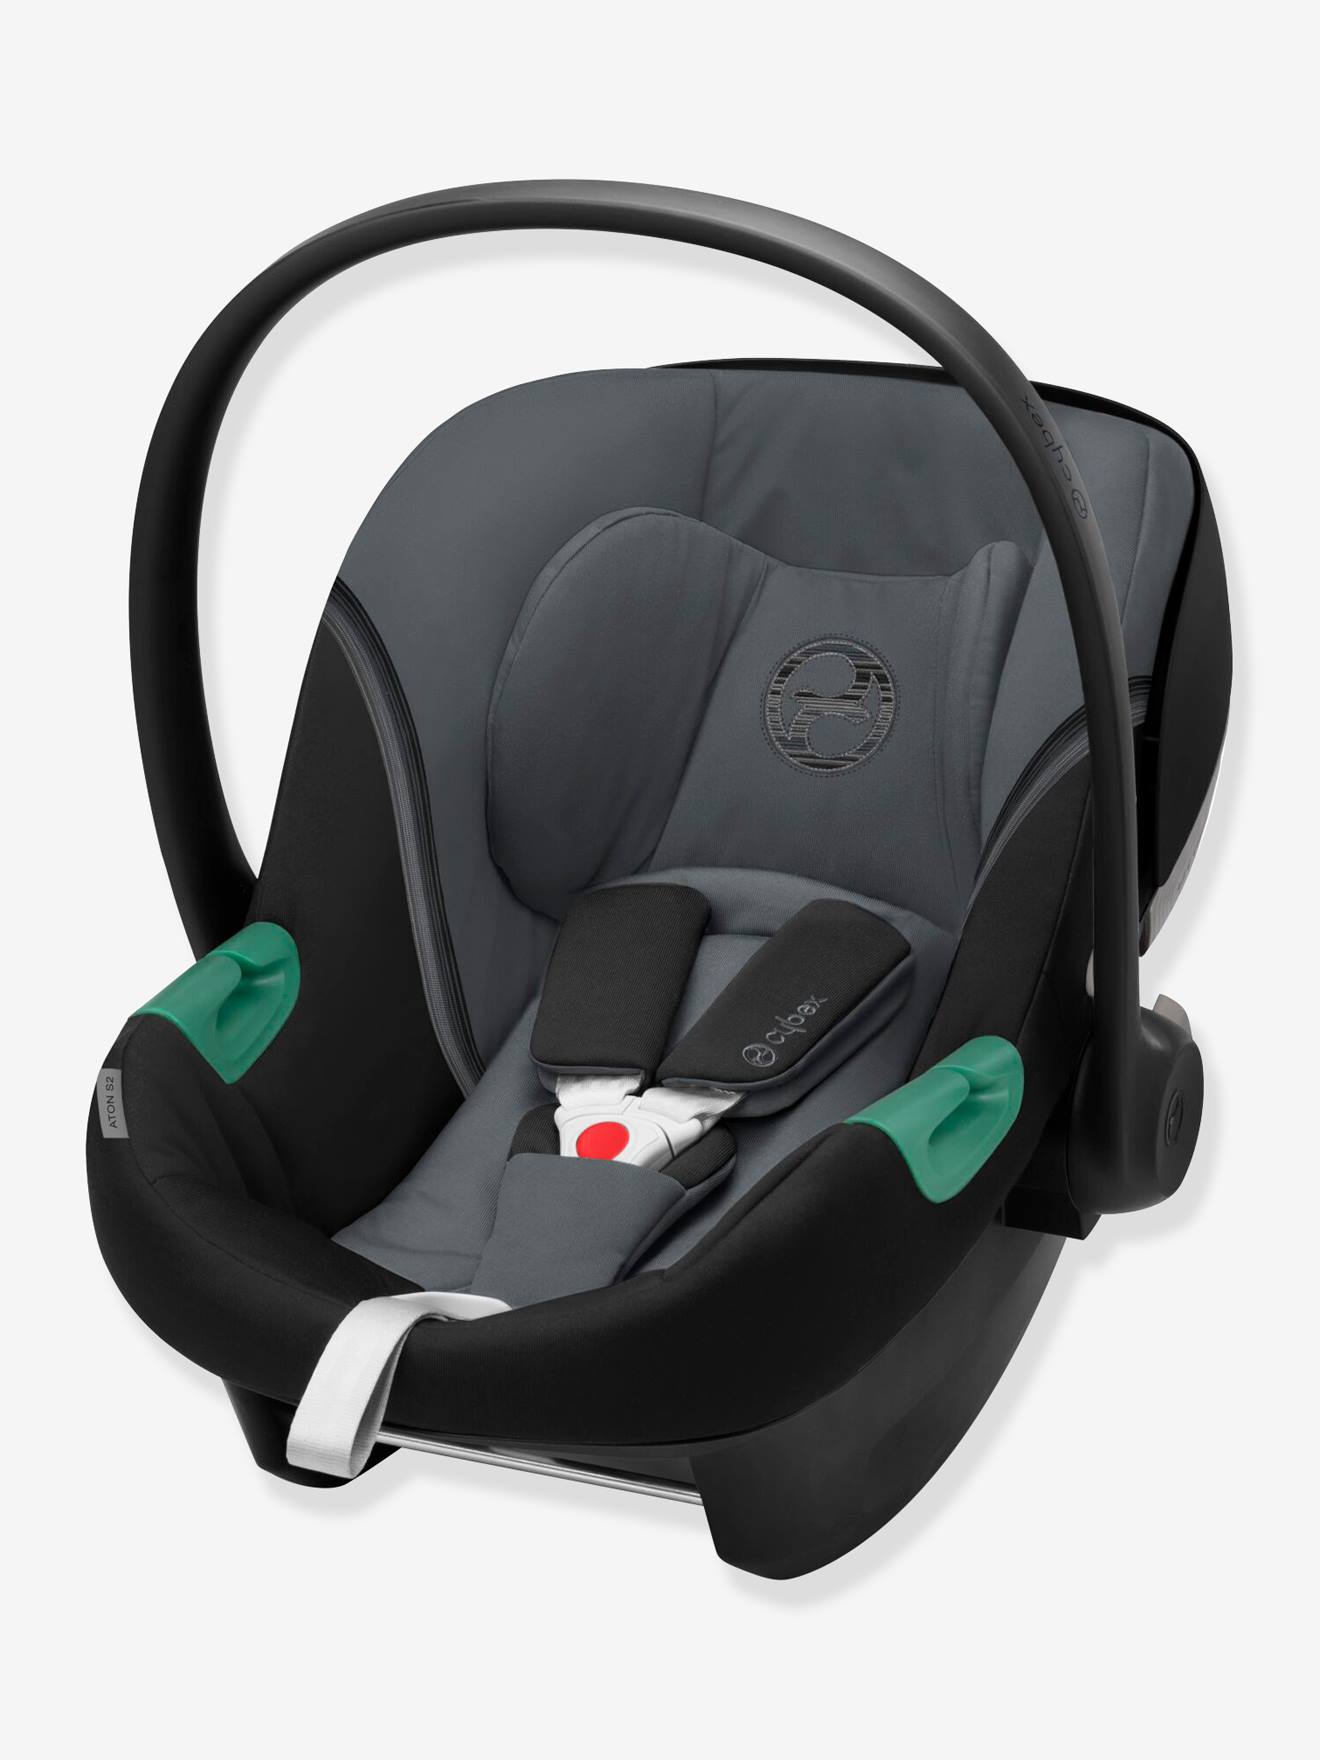 Kopfstütze Babyschale – Die 15 besten Produkte im Vergleich - kita